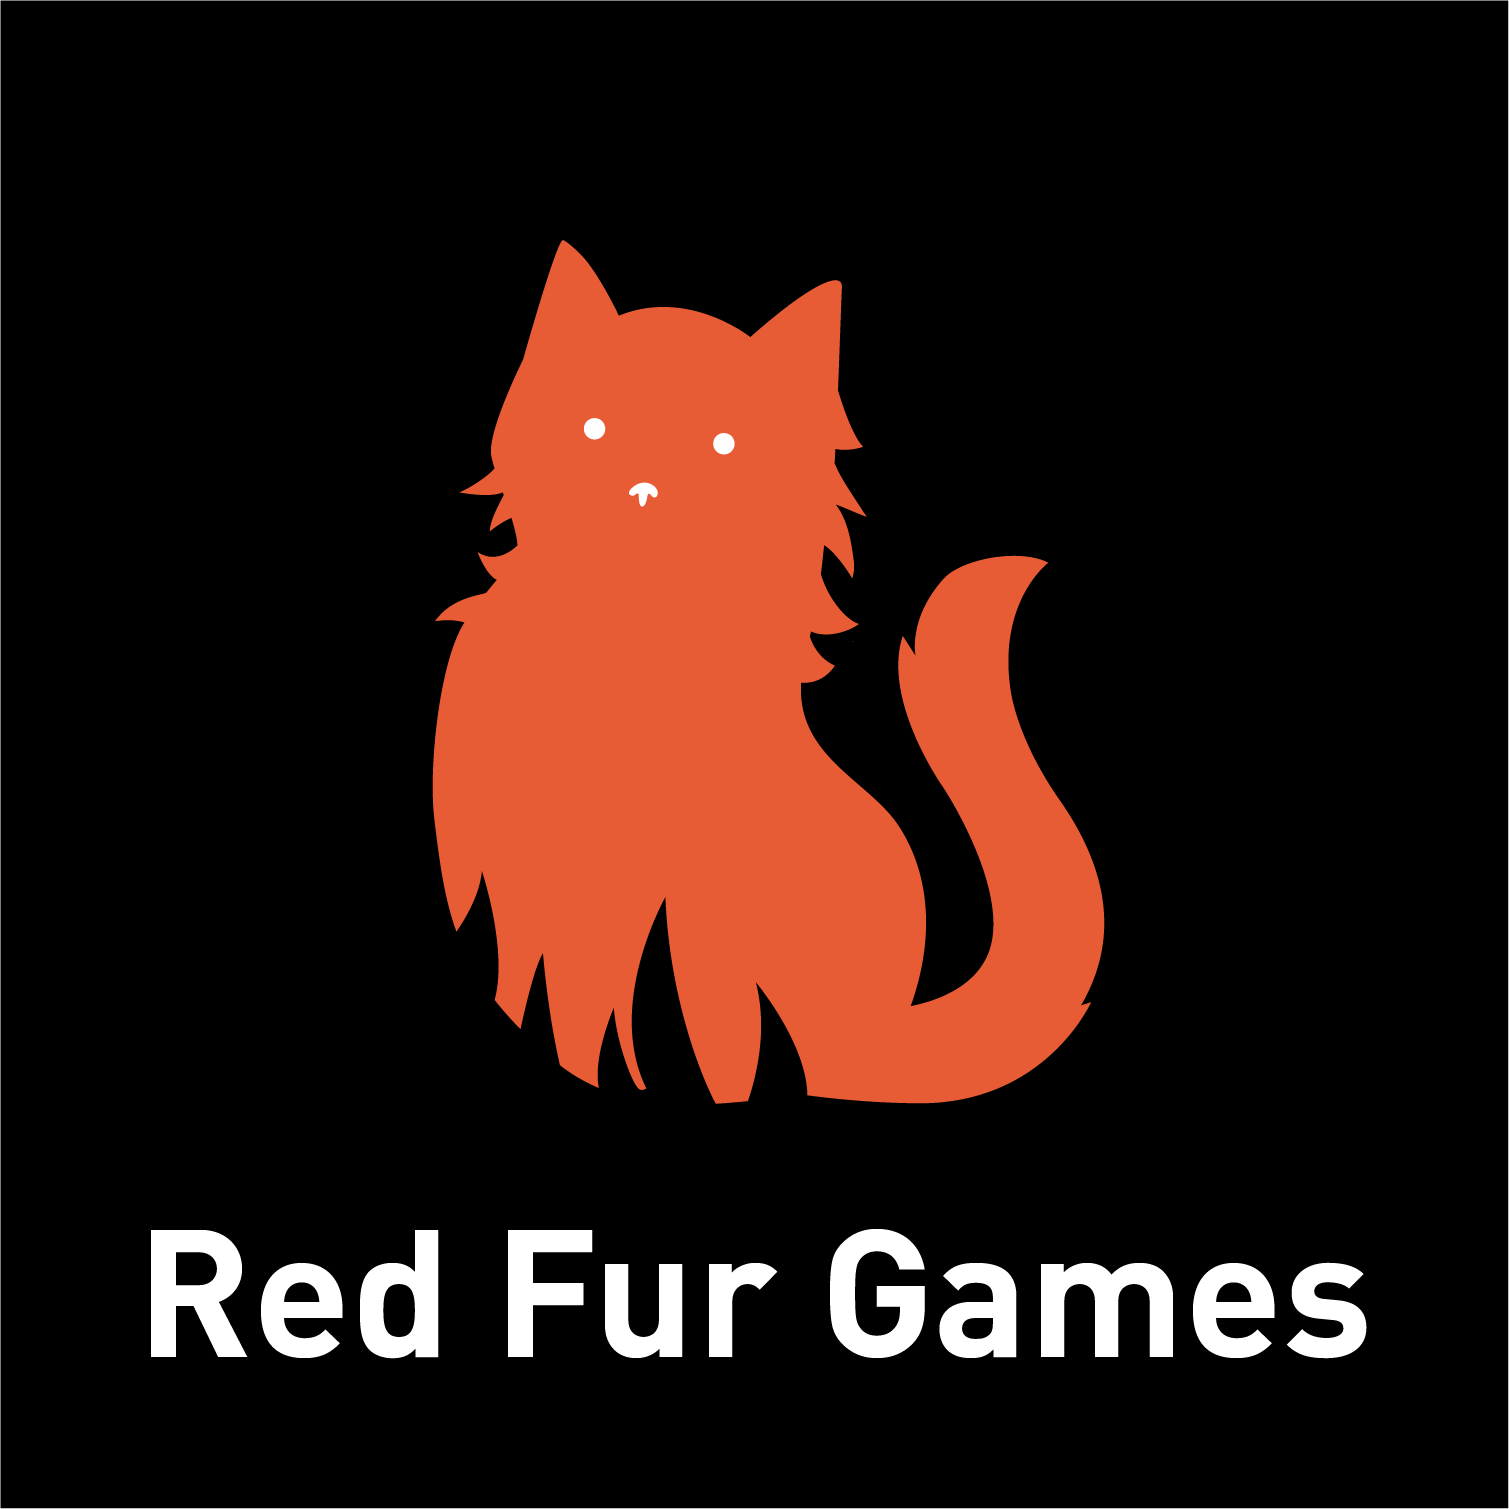 RED_FUR_GAMES_LOGO_v001.png